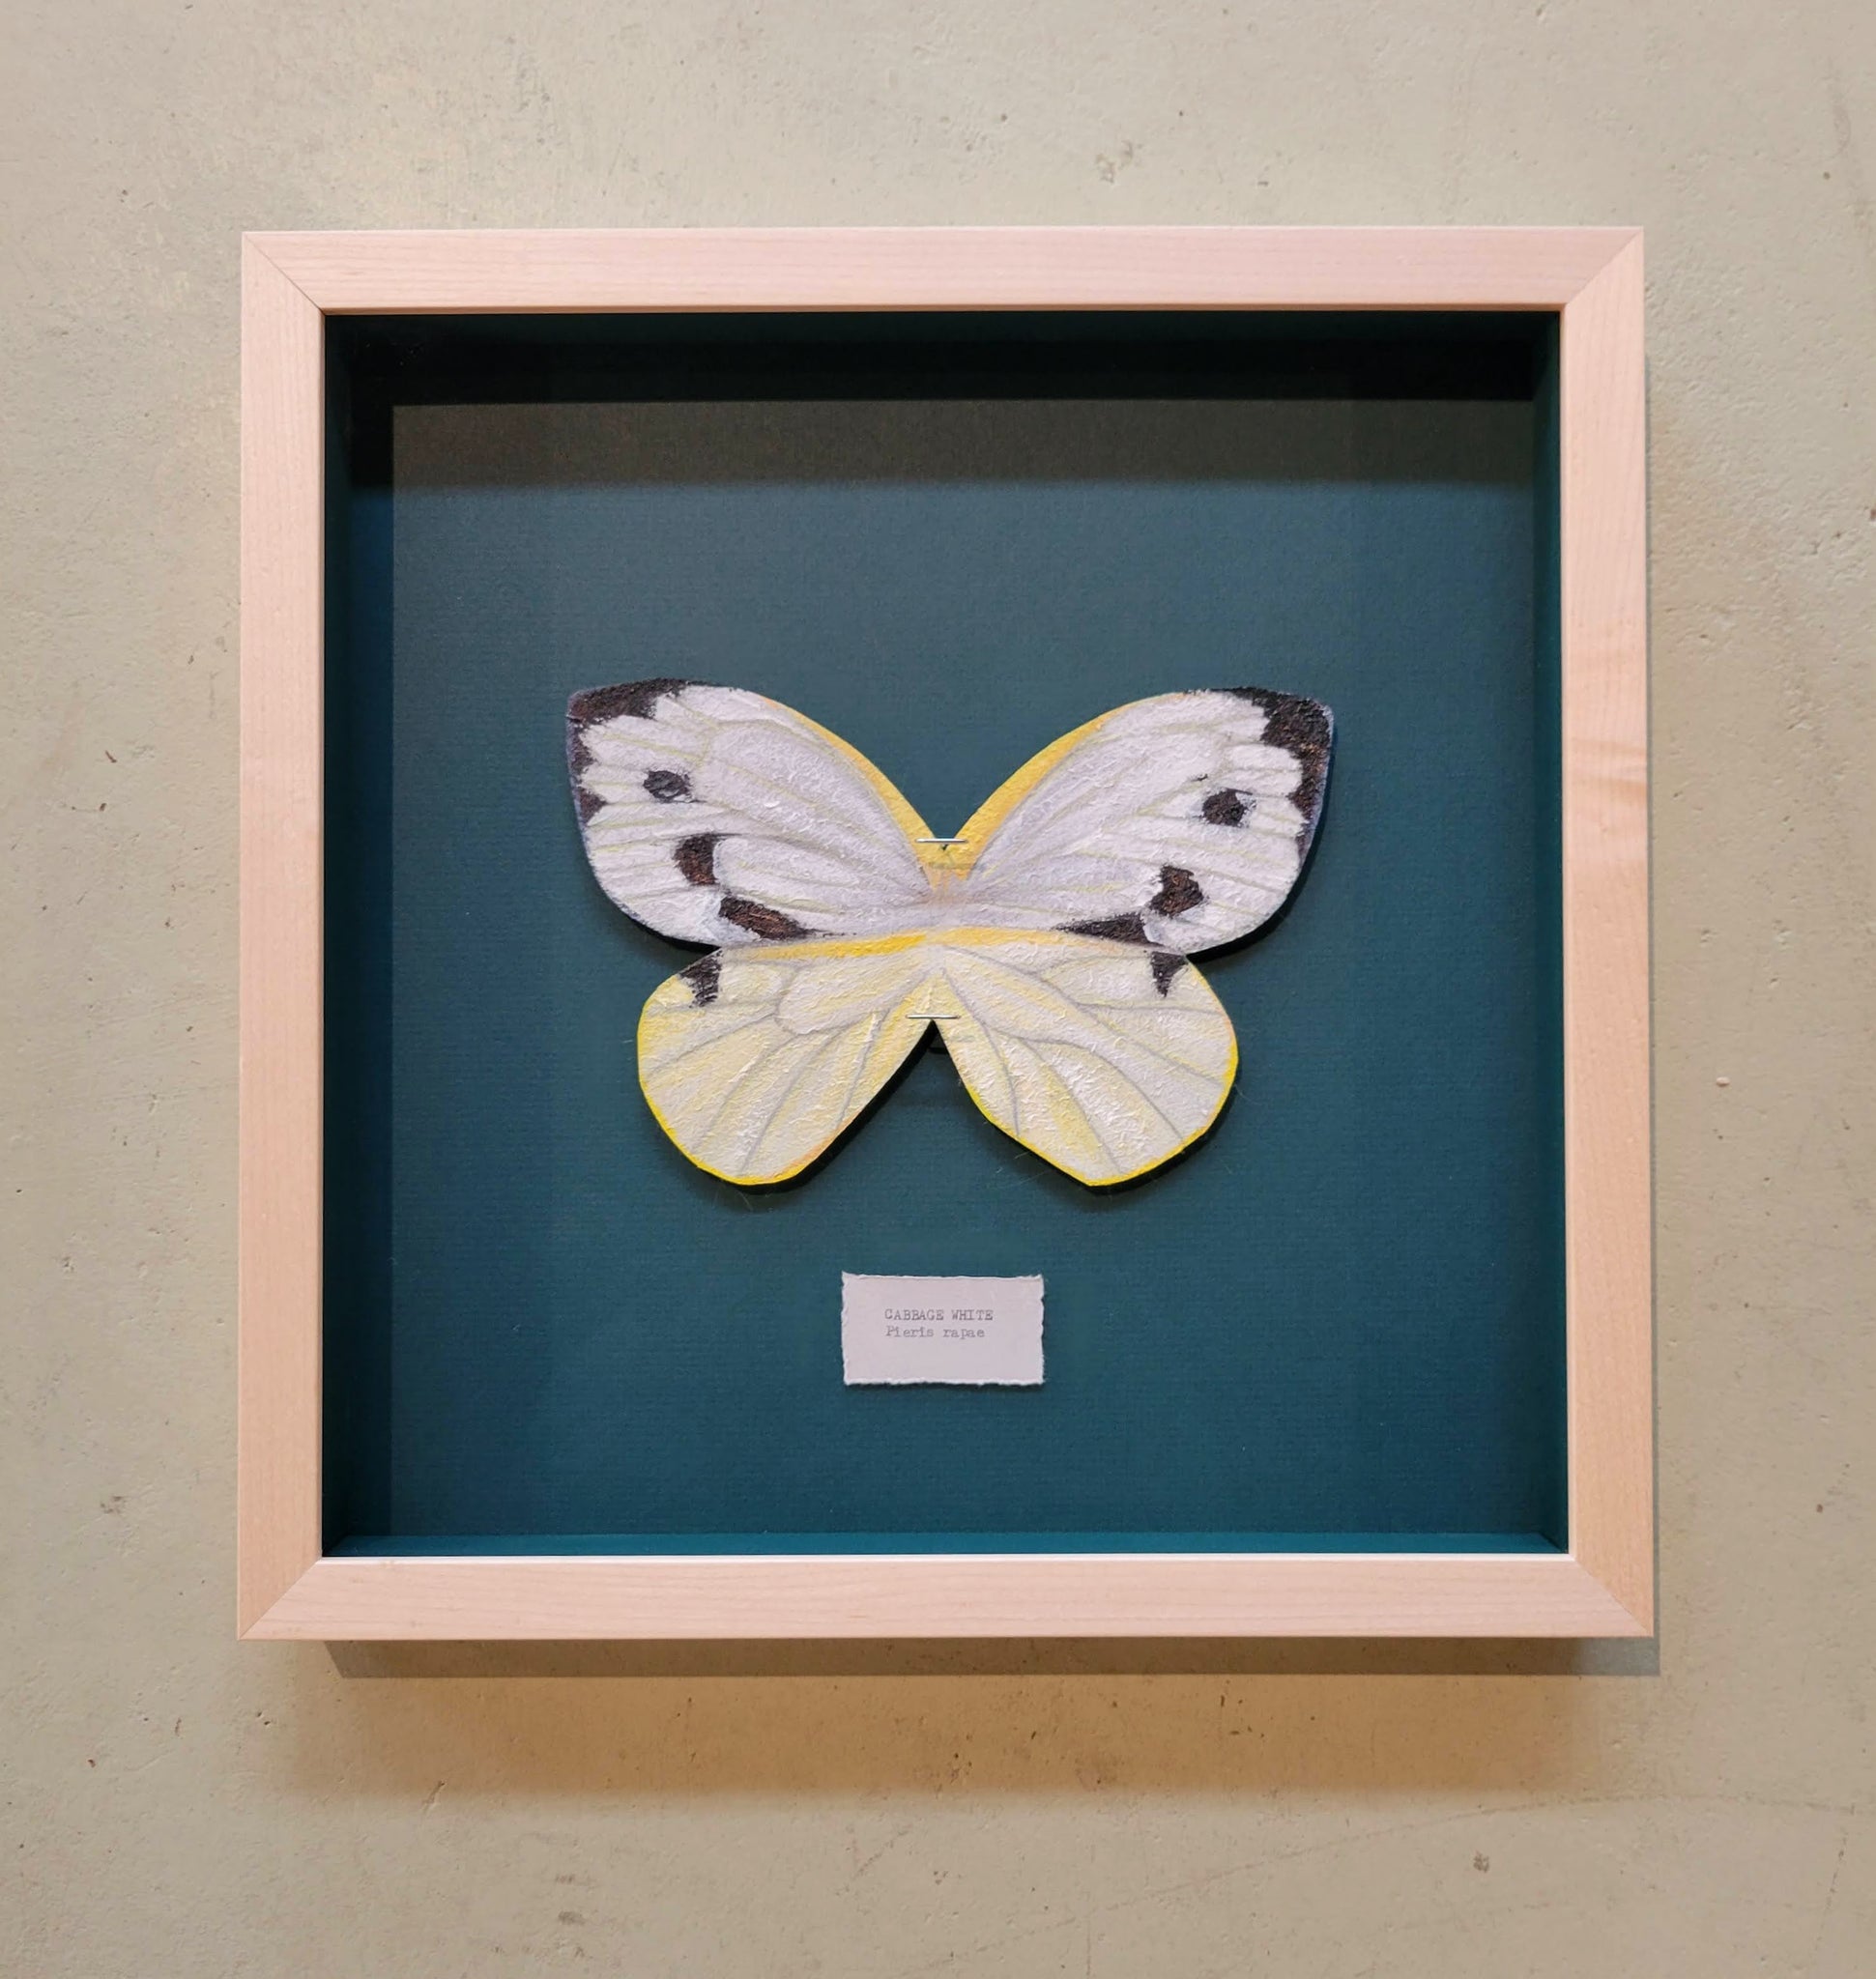 Framed butterfly art – A. L. Lowe Custom Framing